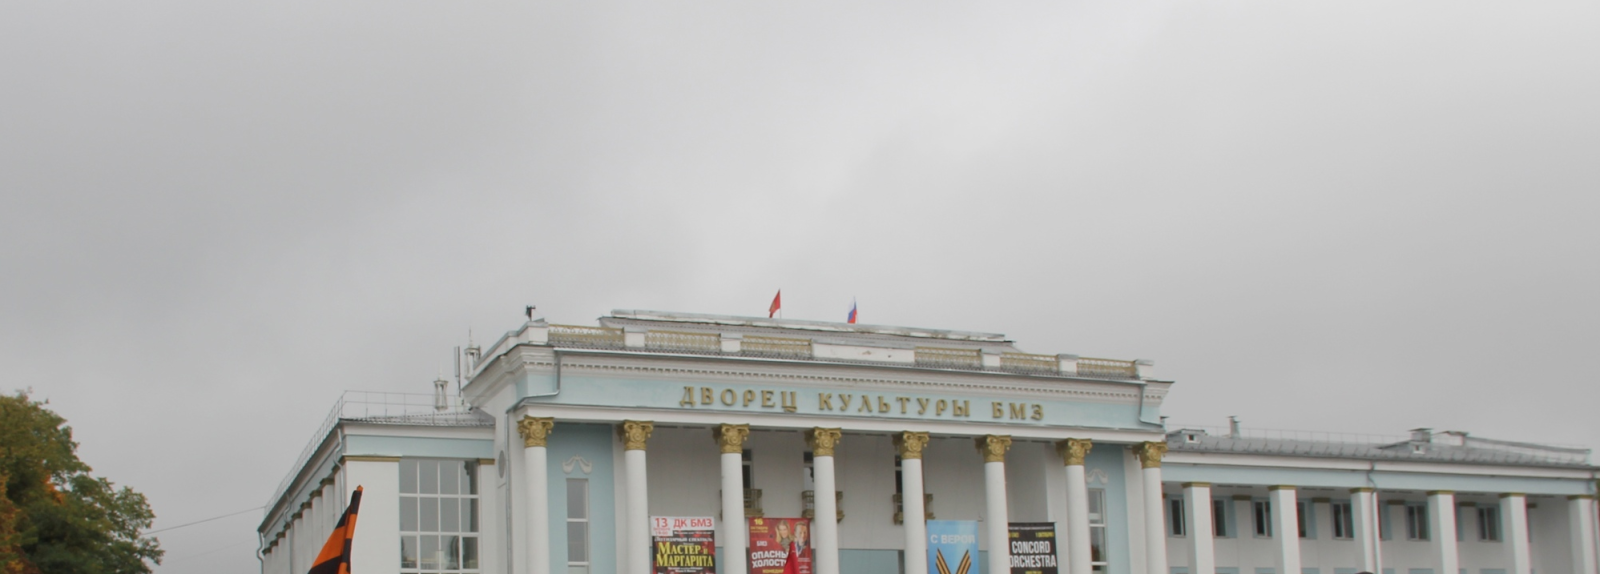 Брянская администрация разрешила установку рекламного щита на площади ДК БМЗ